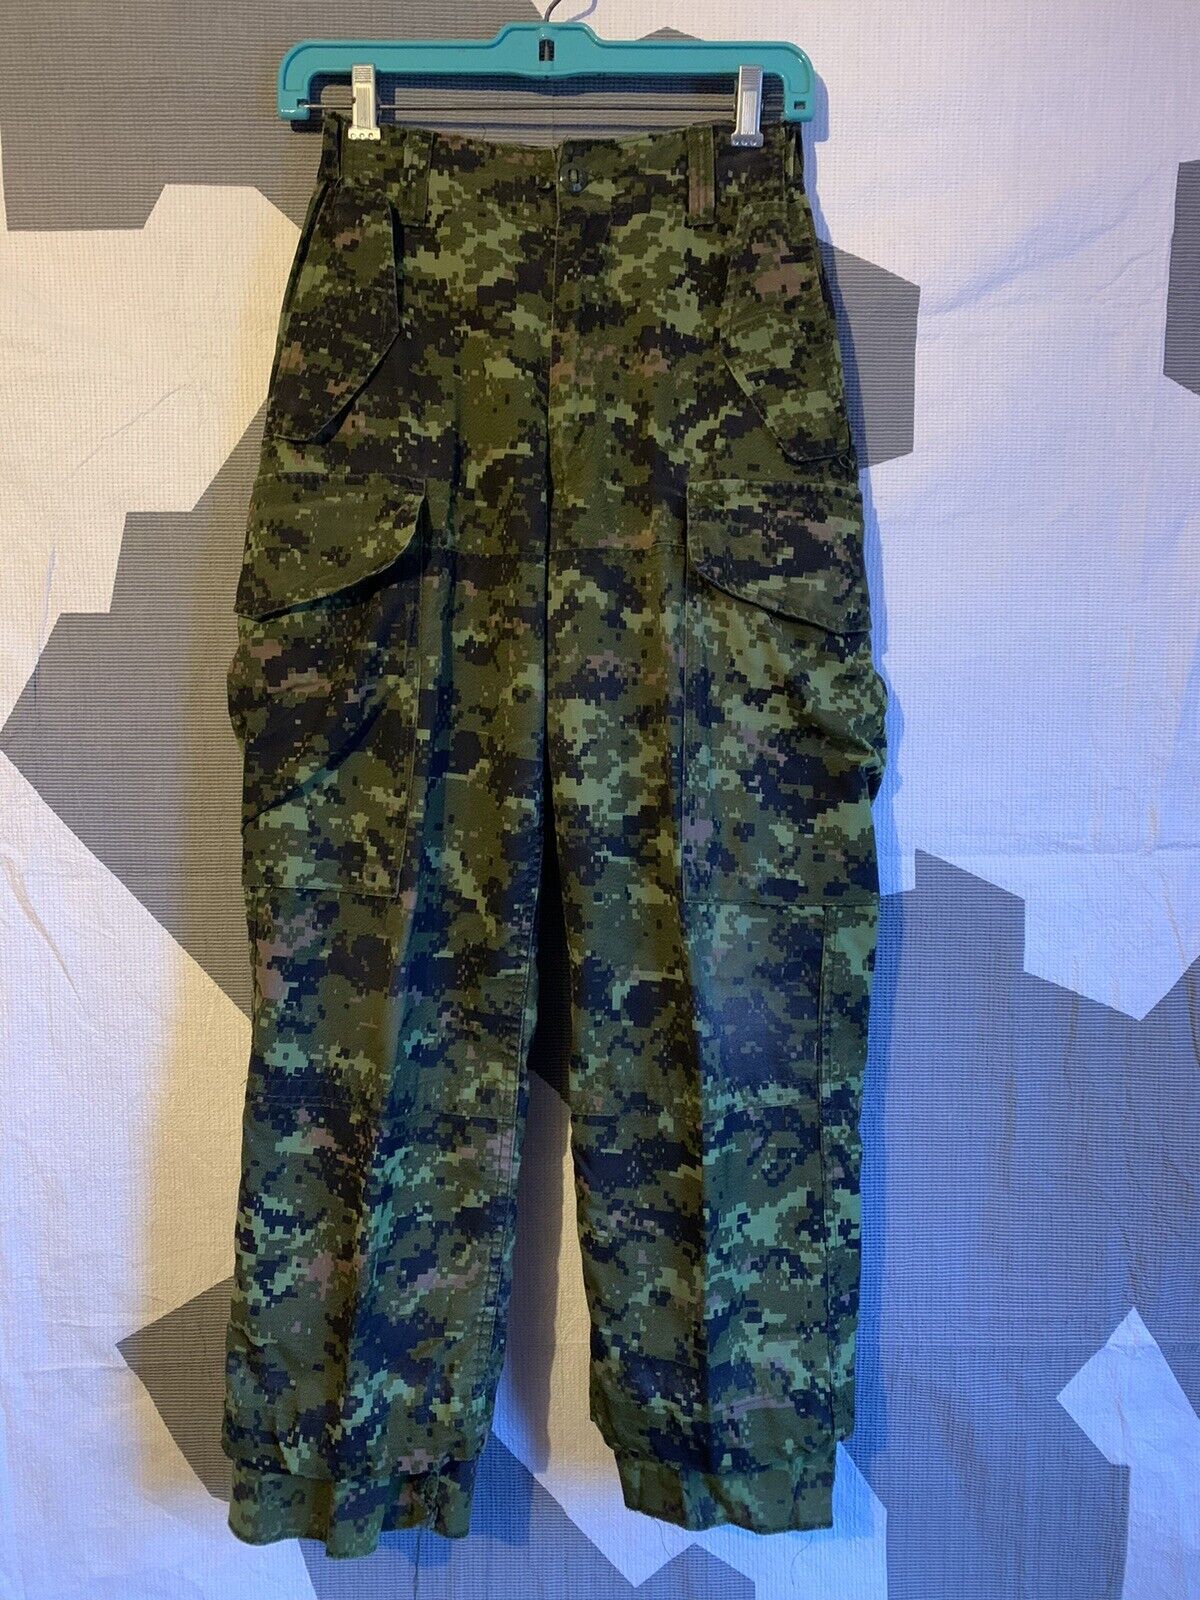 CADPAT combat Pants Size 6426 Canadian Army Surplus